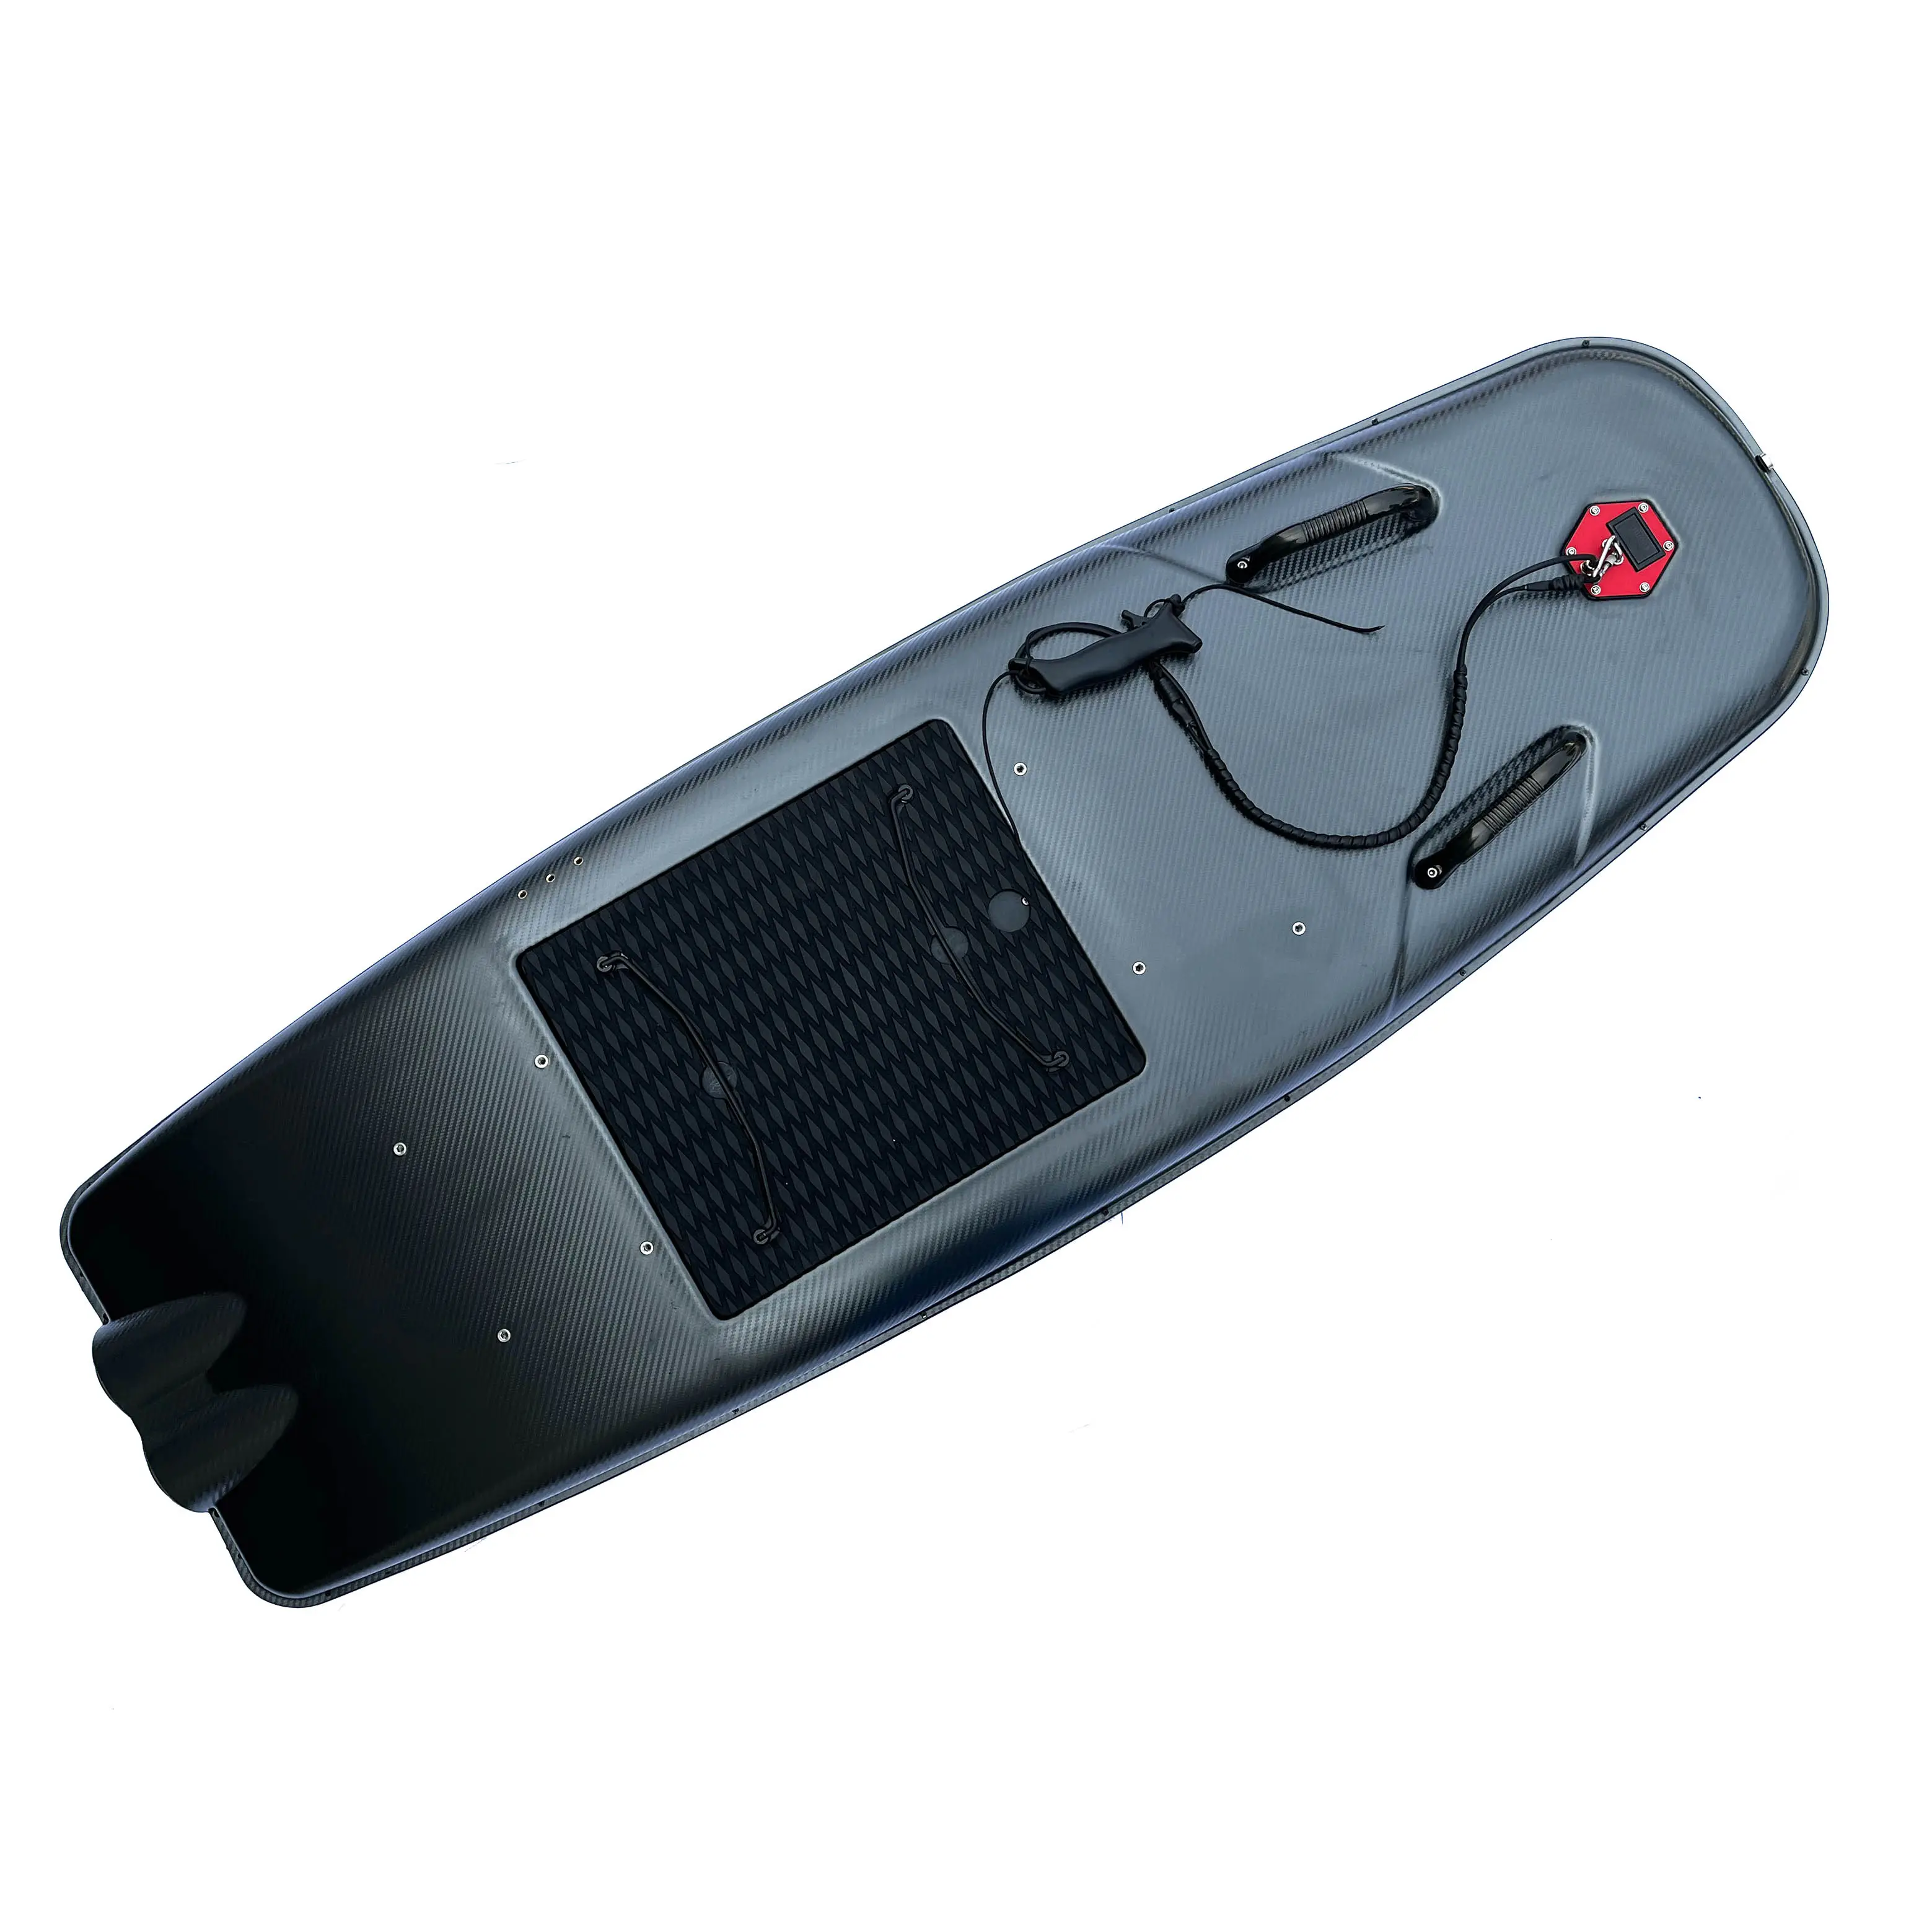 サーフィン愛好家のための高品質電気サーフボードジェットサーフボード新製品リリース